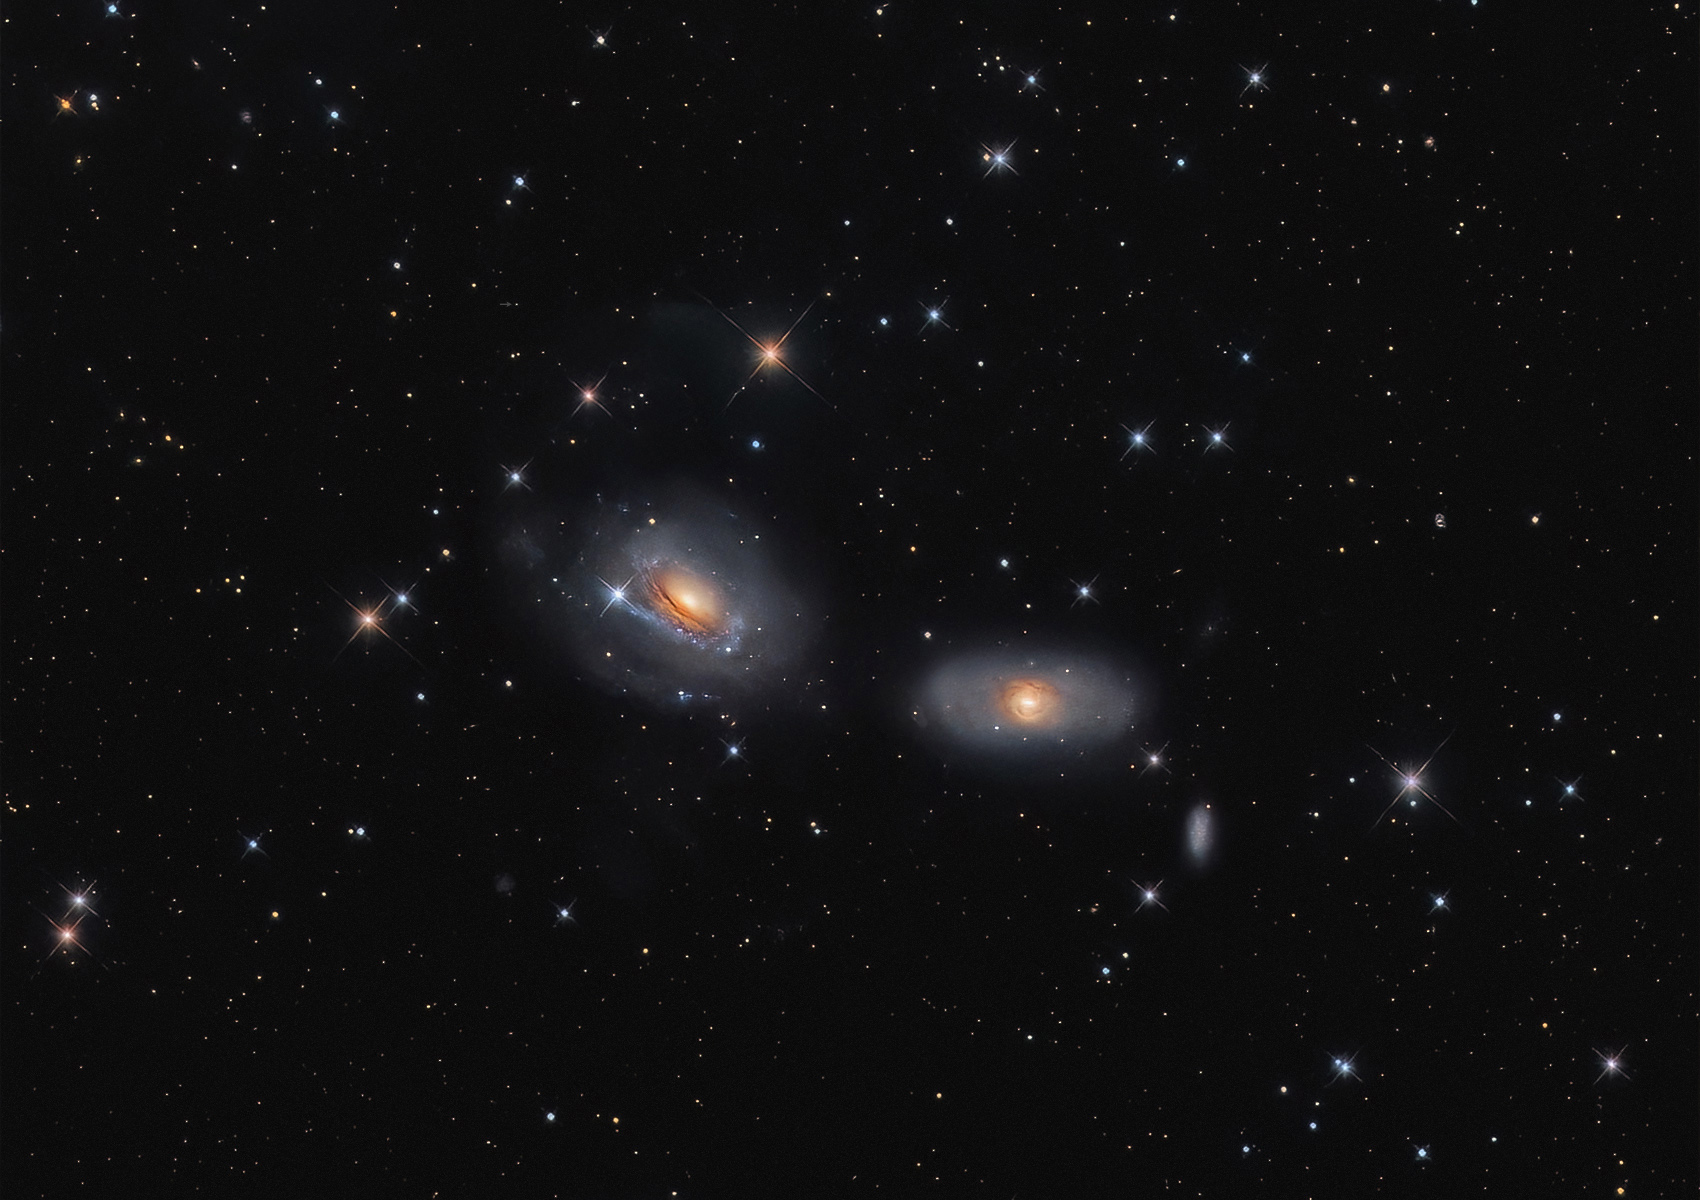 NGC 3169